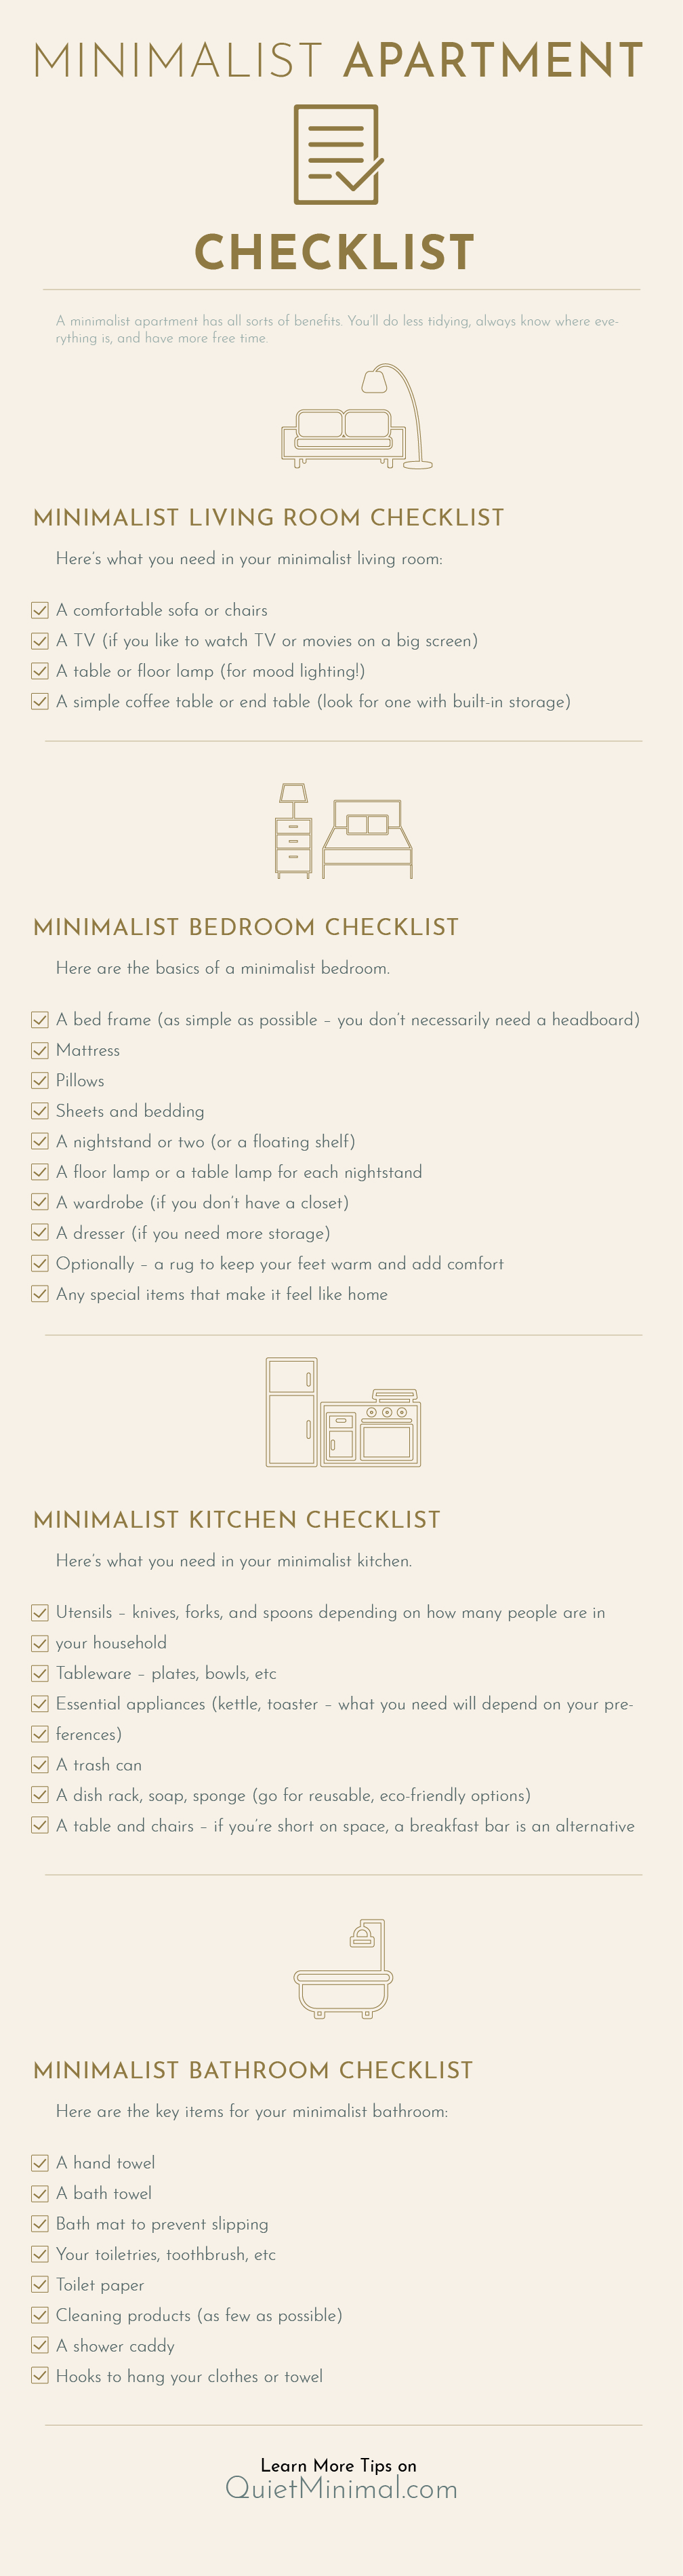 Minimalist appartment checklist